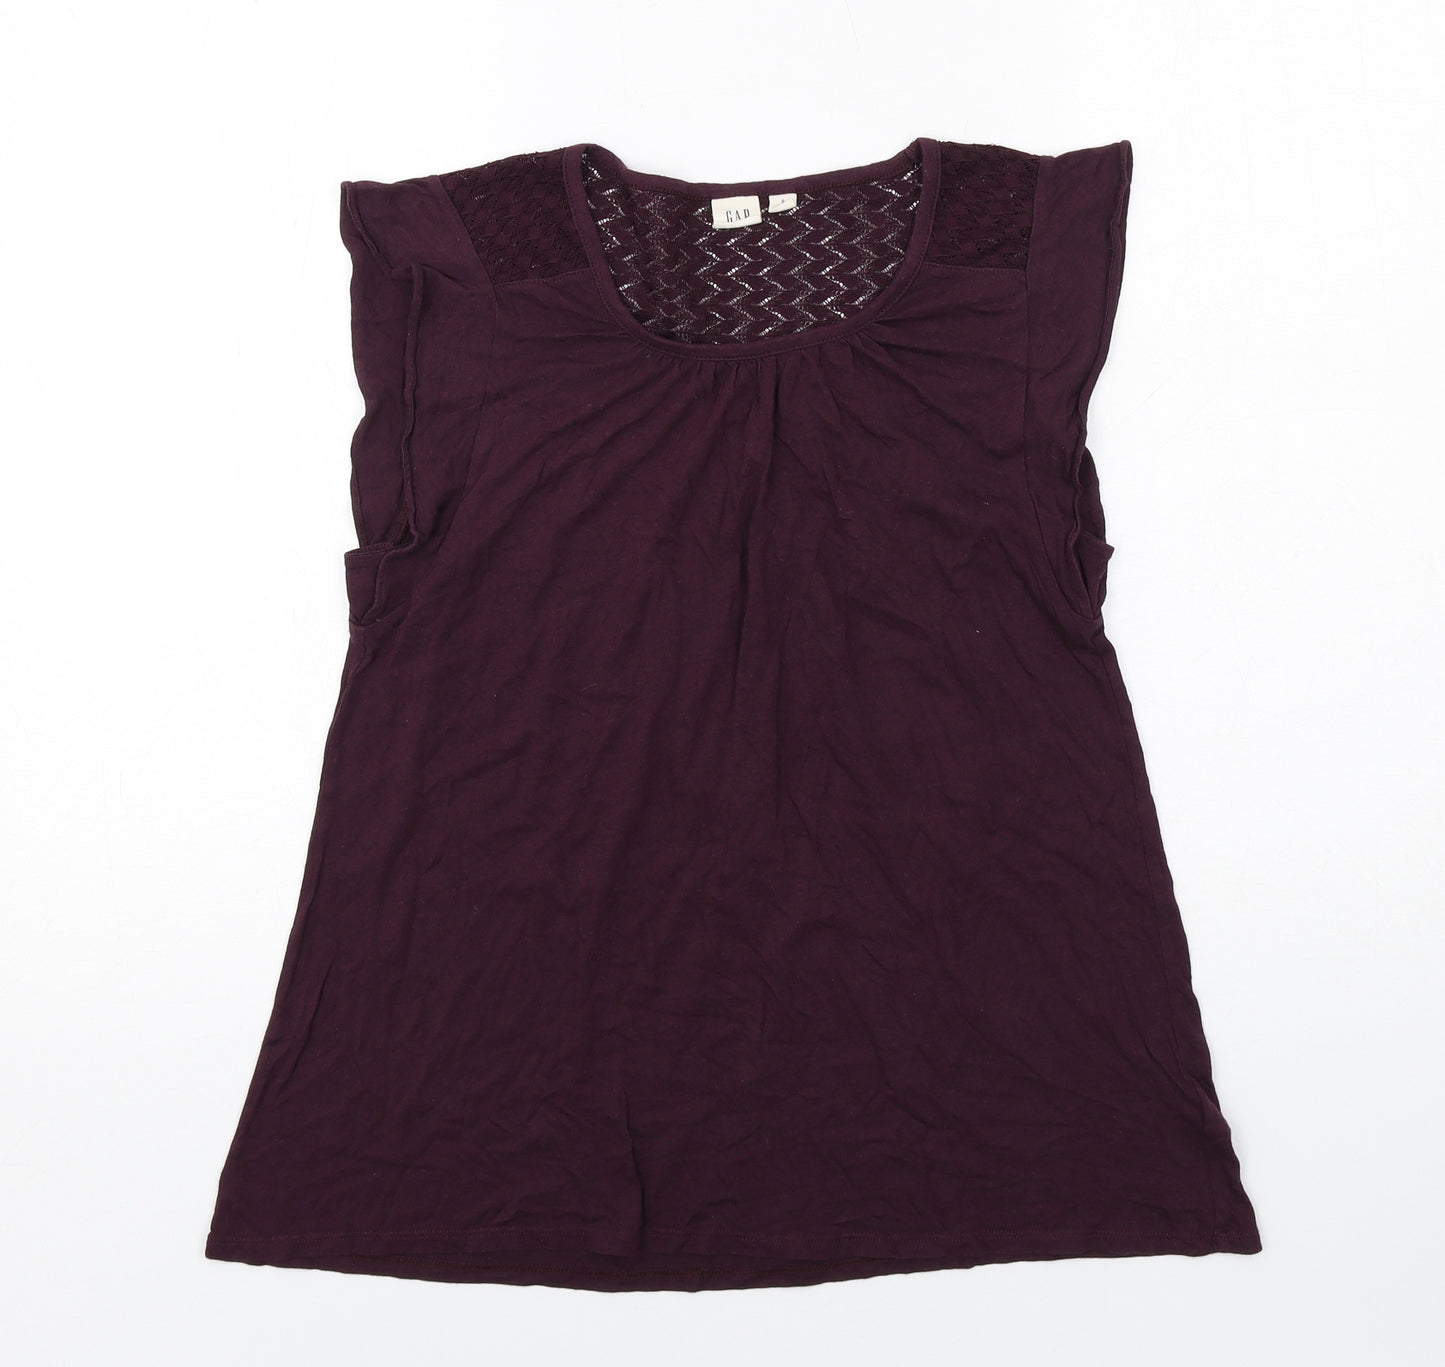 Gap Womens Purple Cotton Basic T-Shirt Size S Boat Neck - Lace Detail